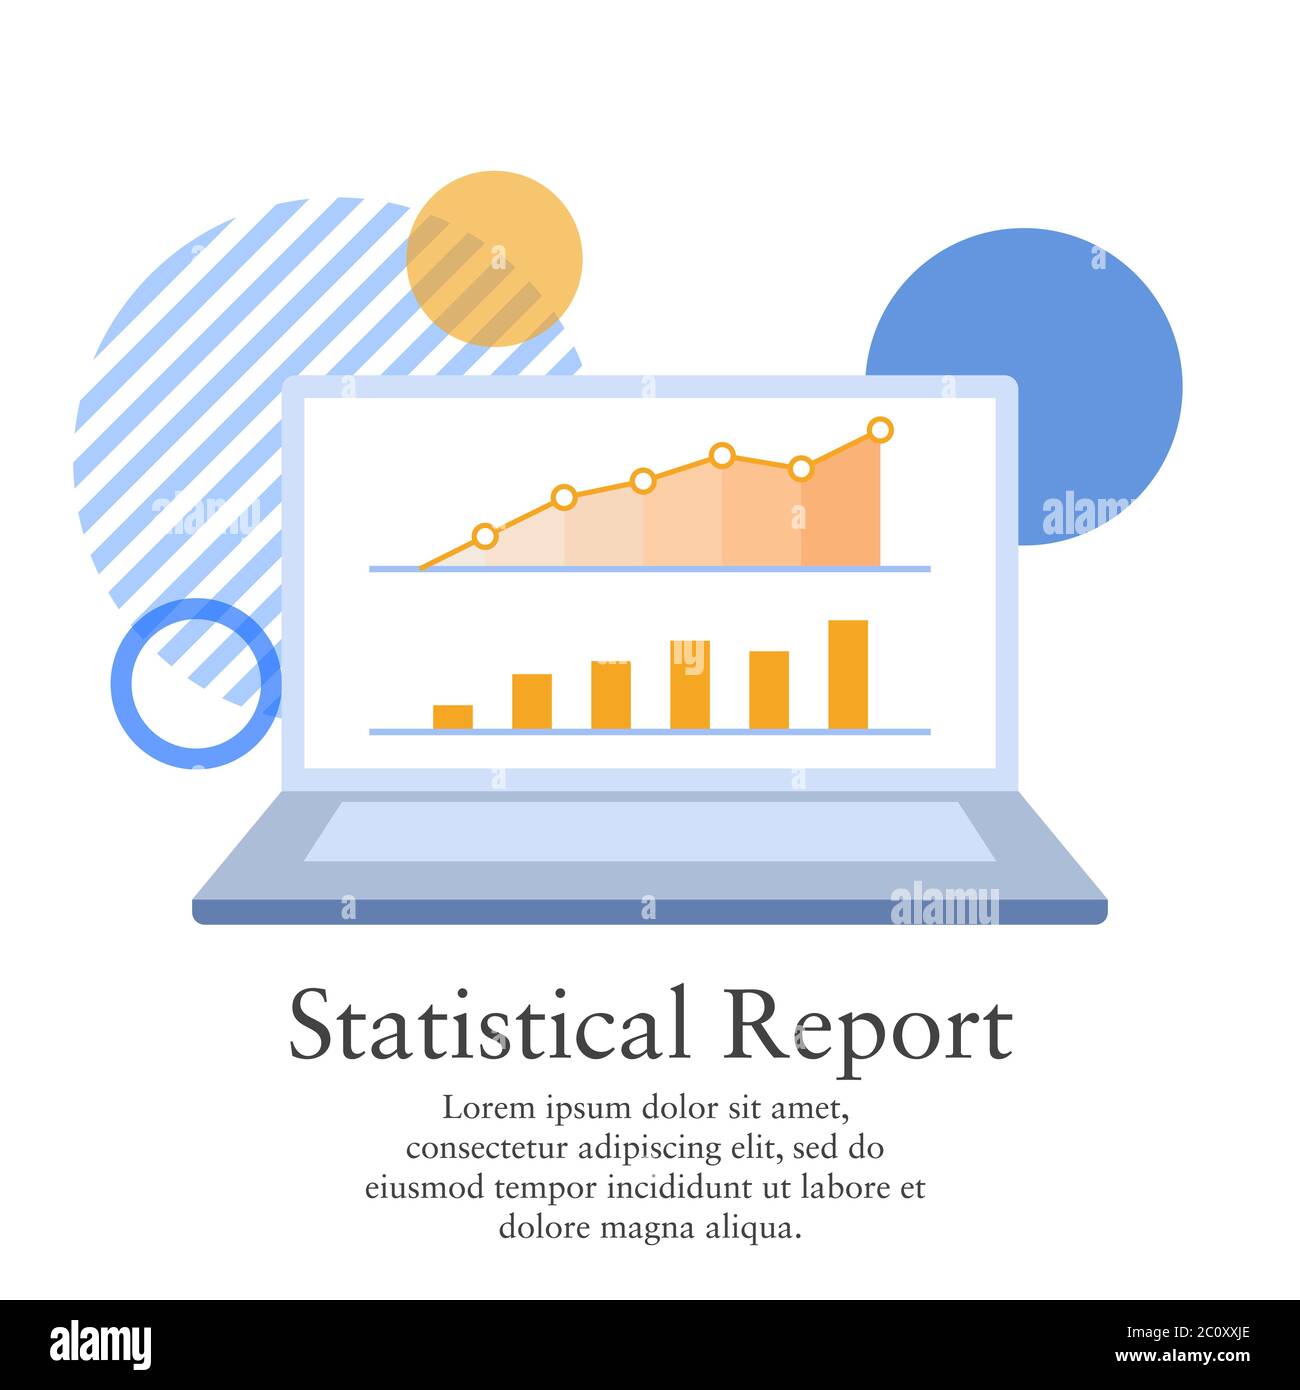 Illustrazione vettoriale di un rapporto statistico da un profitto di affari. Presentazione della grafica sullo schermo di un computer portatile. Illustrazione Vettoriale